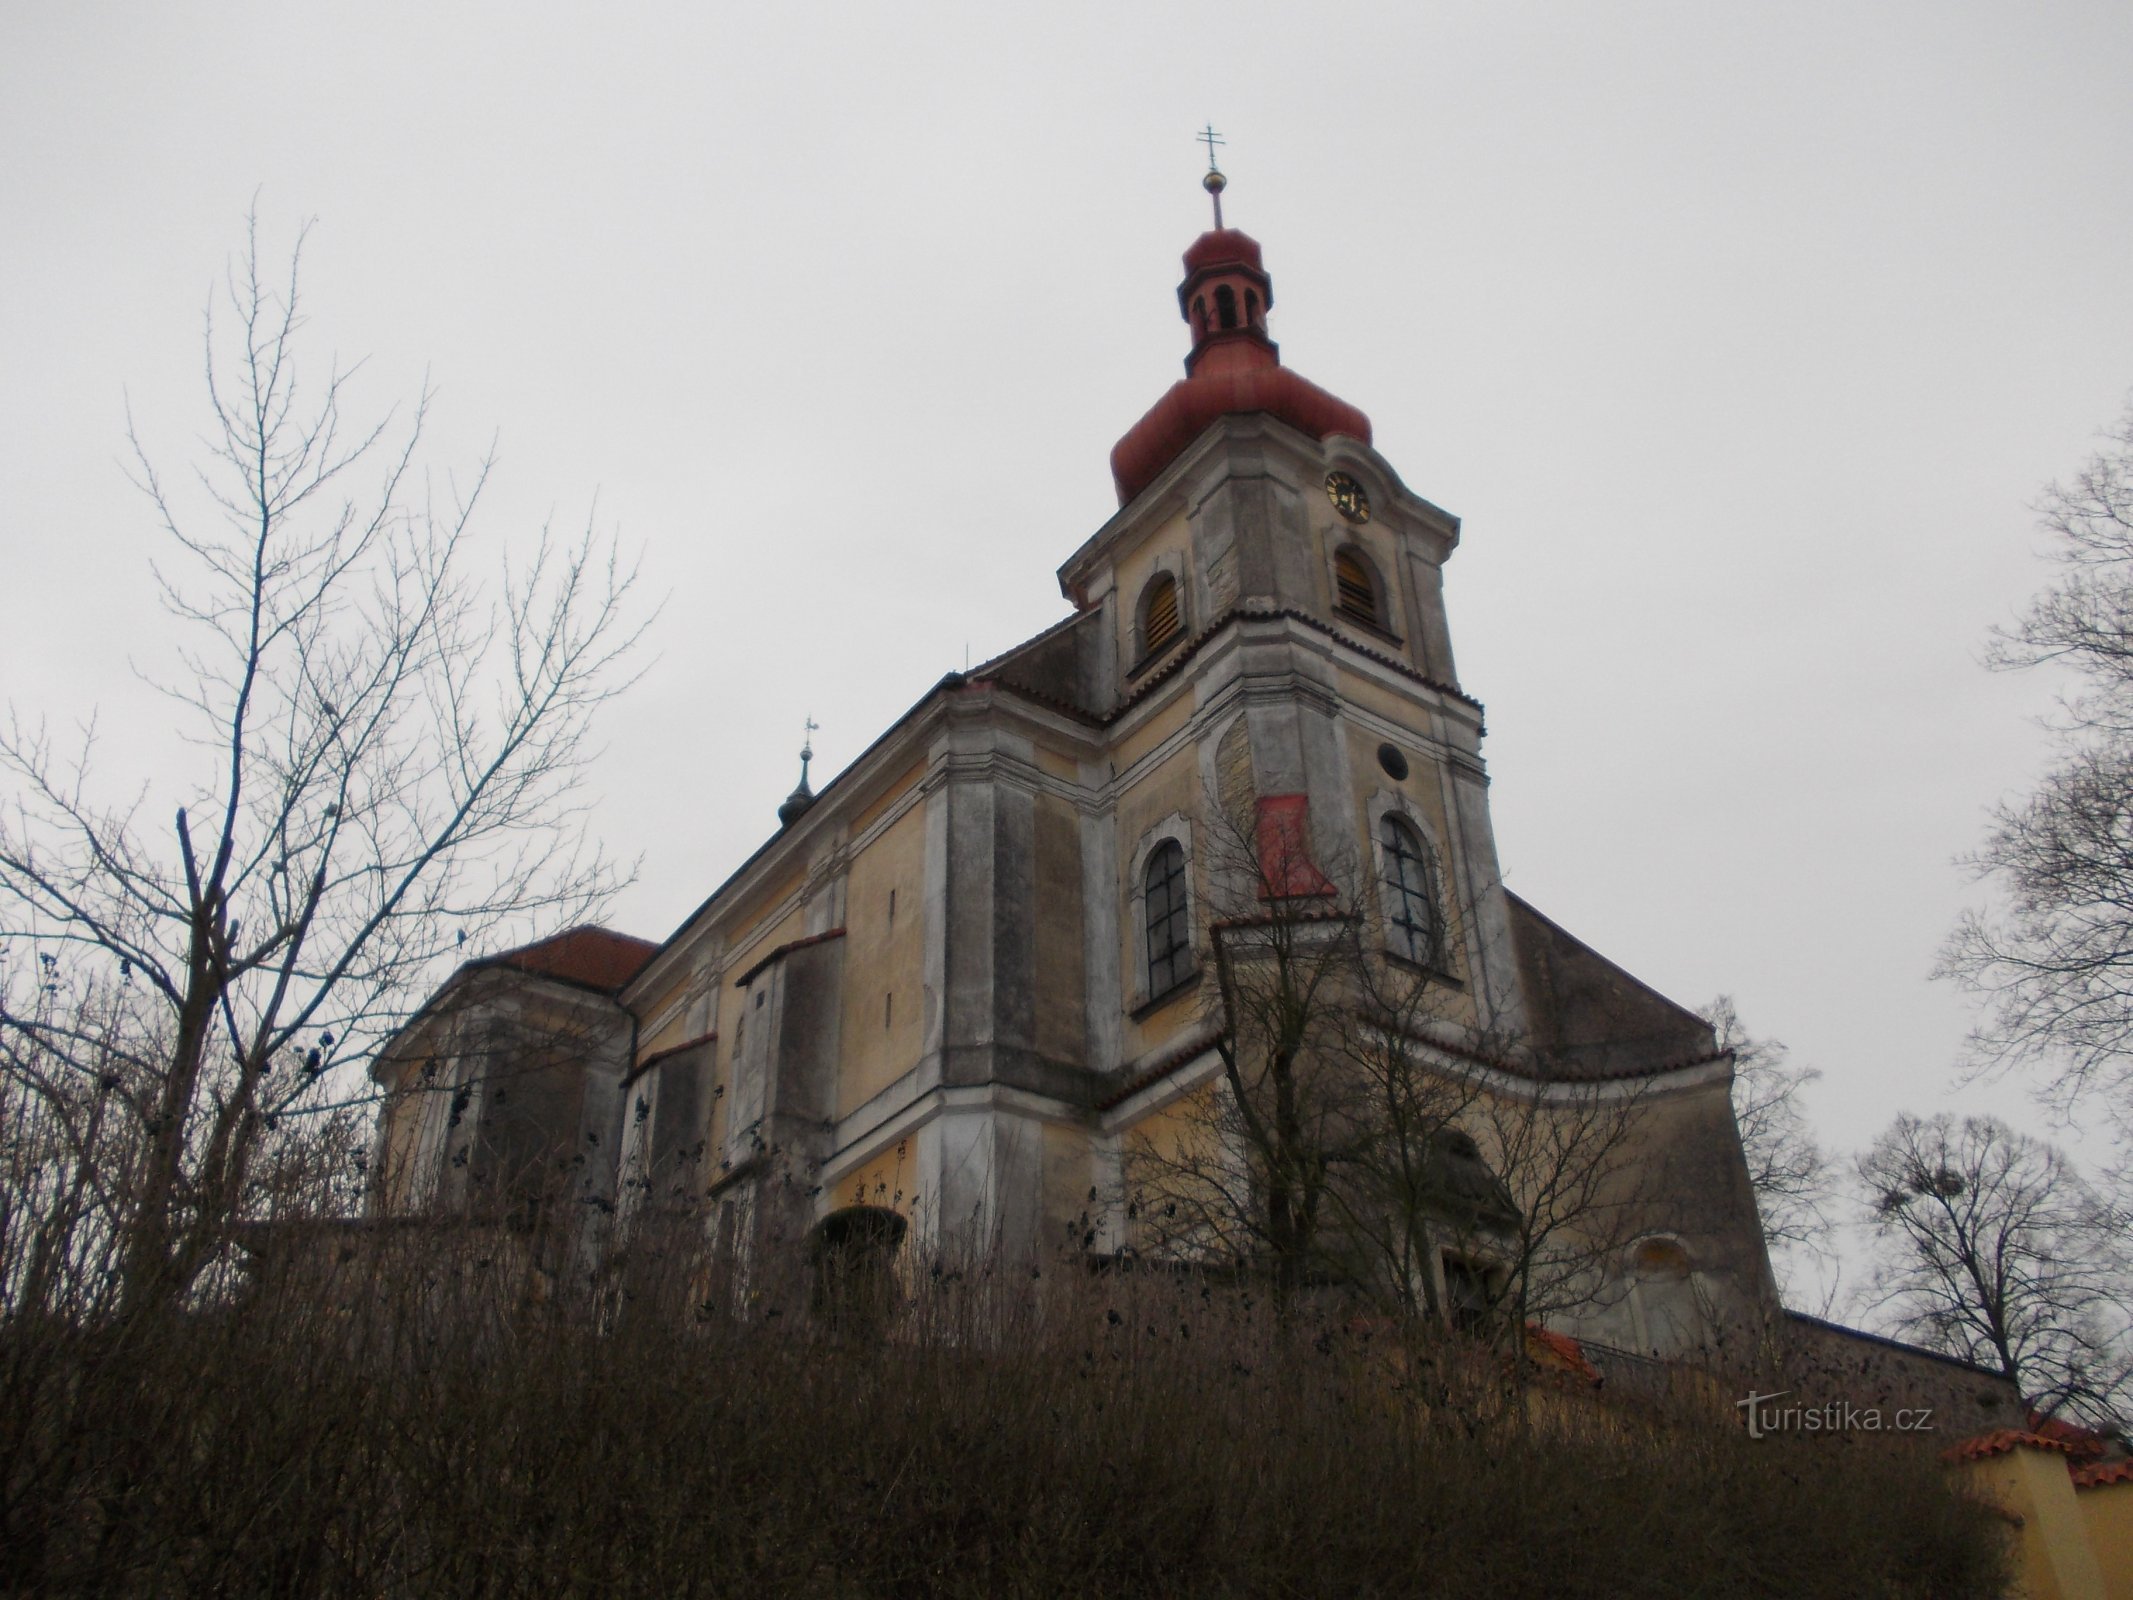 kyrka på en kulle i byn Běstvina